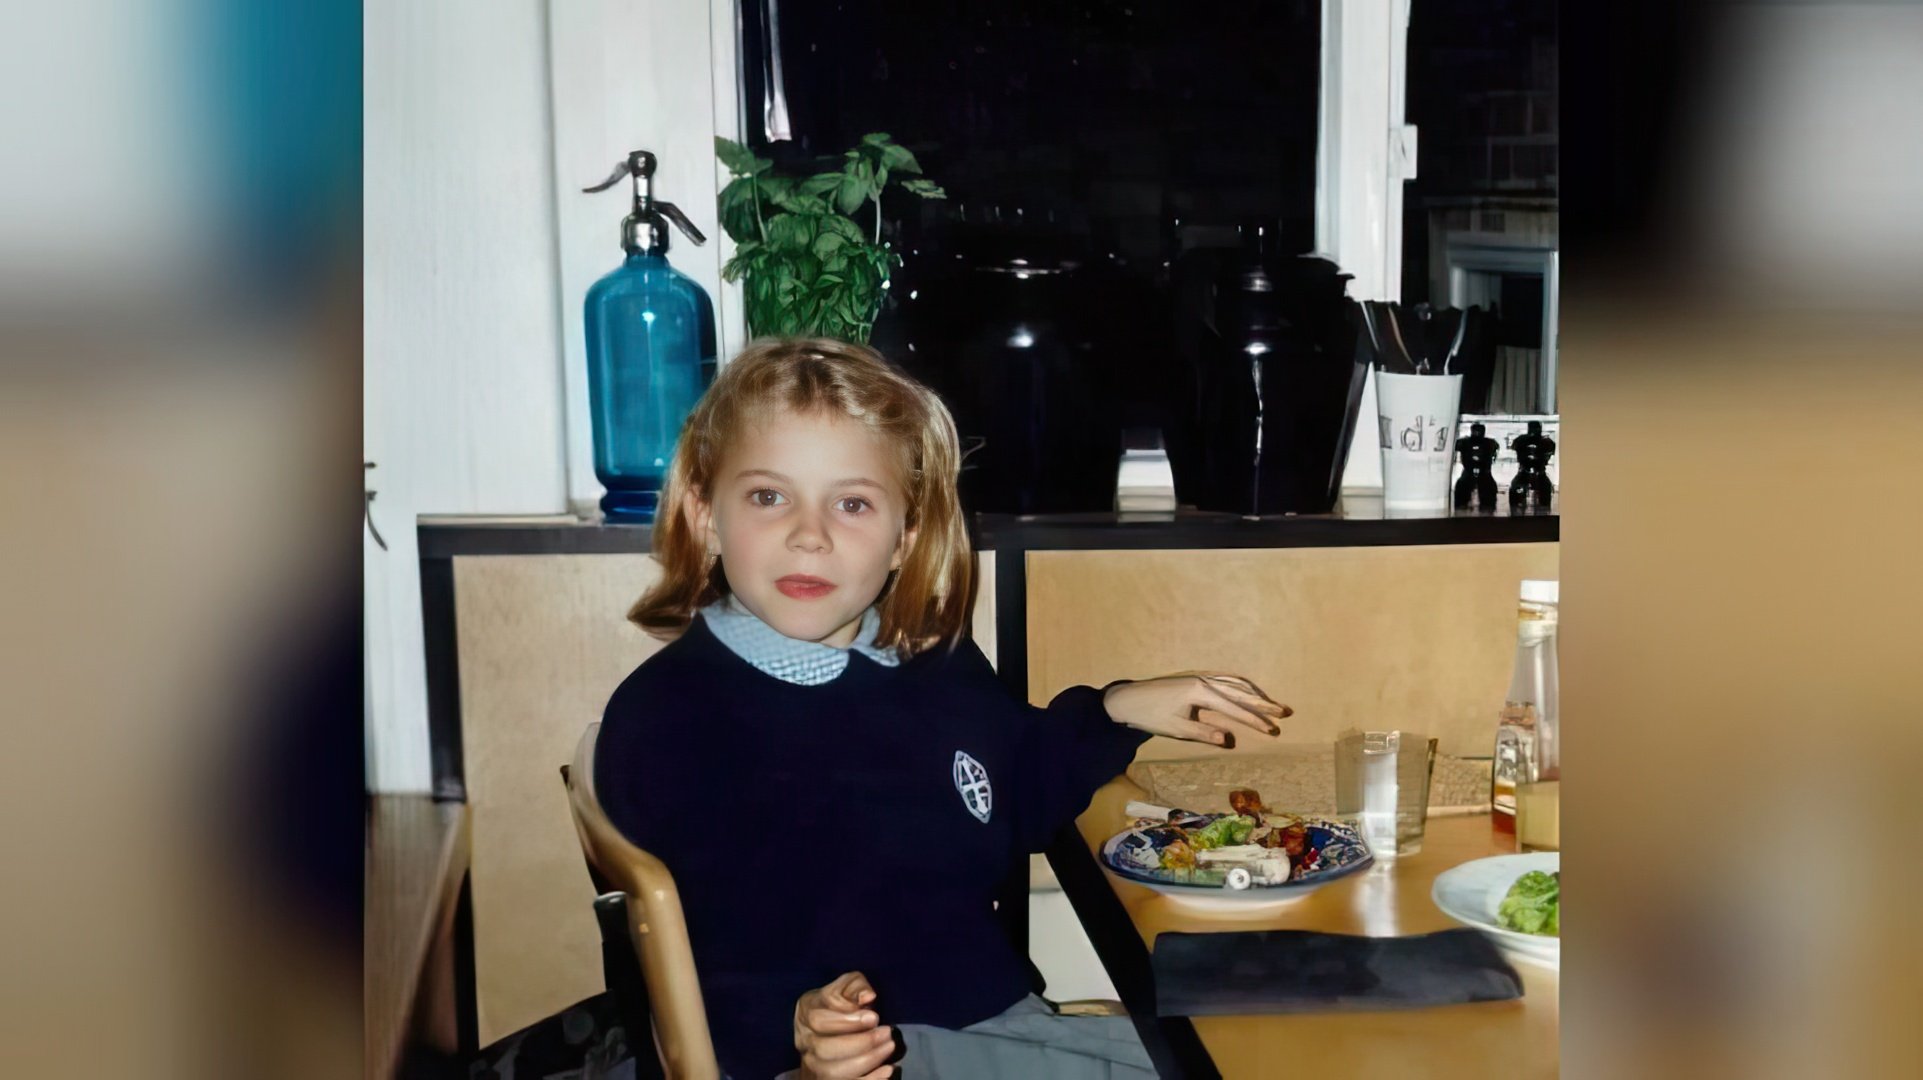 Sienna Miller in childhood